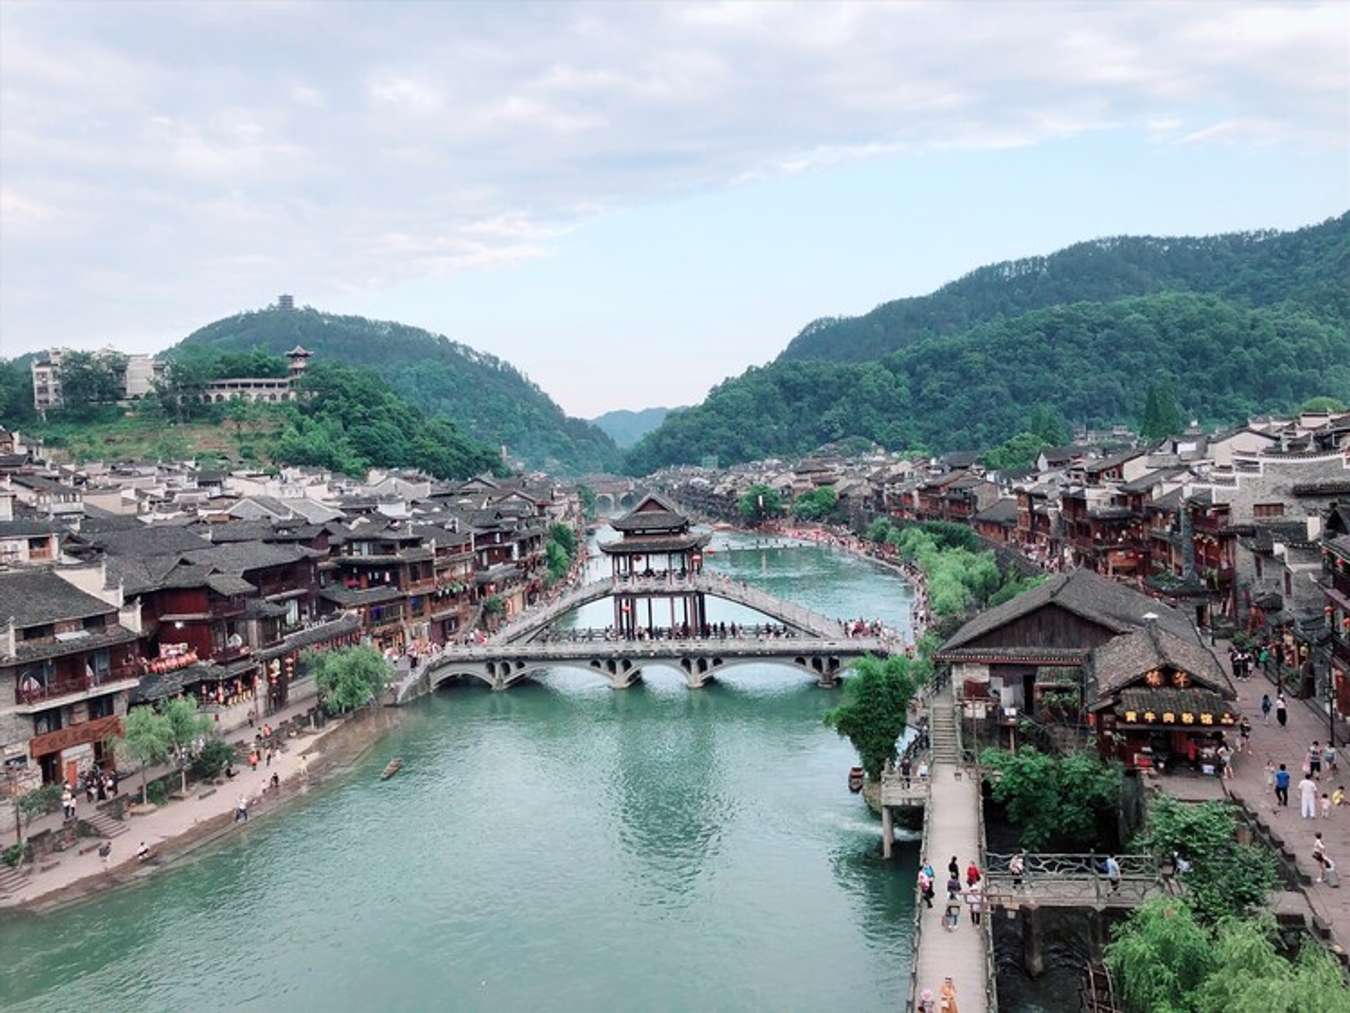 Hãy tìm hiểu và khám phá vẻ đẹp của địa điểm du lịch Trung Quốc - một trong những nước có lịch sử và văn hóa đa dạng nhất thế giới. Hình ảnh liên quan đến từ khóa này sẽ khiến bạn khát khao khám phá những danh lam thắng cảnh độc đáo và tìm hiểu về nền văn hóa phong phú của đất nước này.